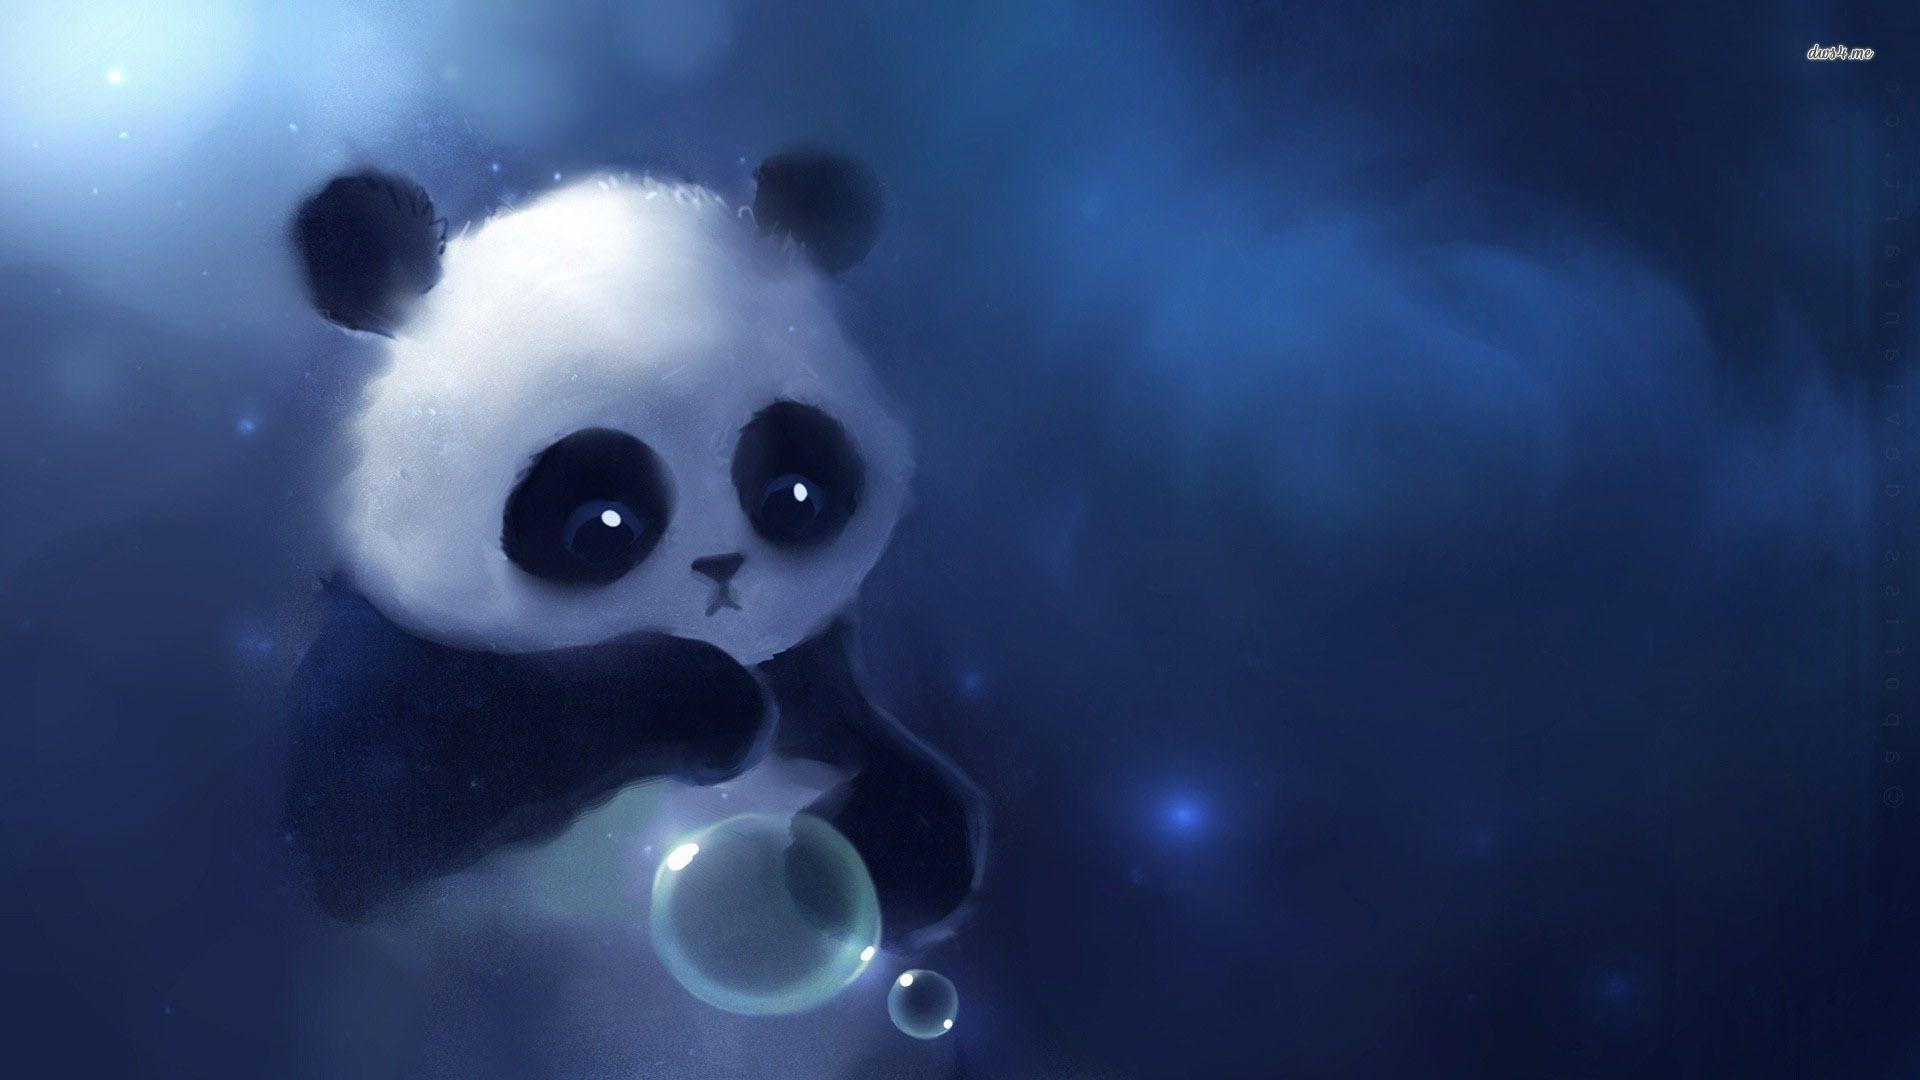 cute panda anime wallpaper